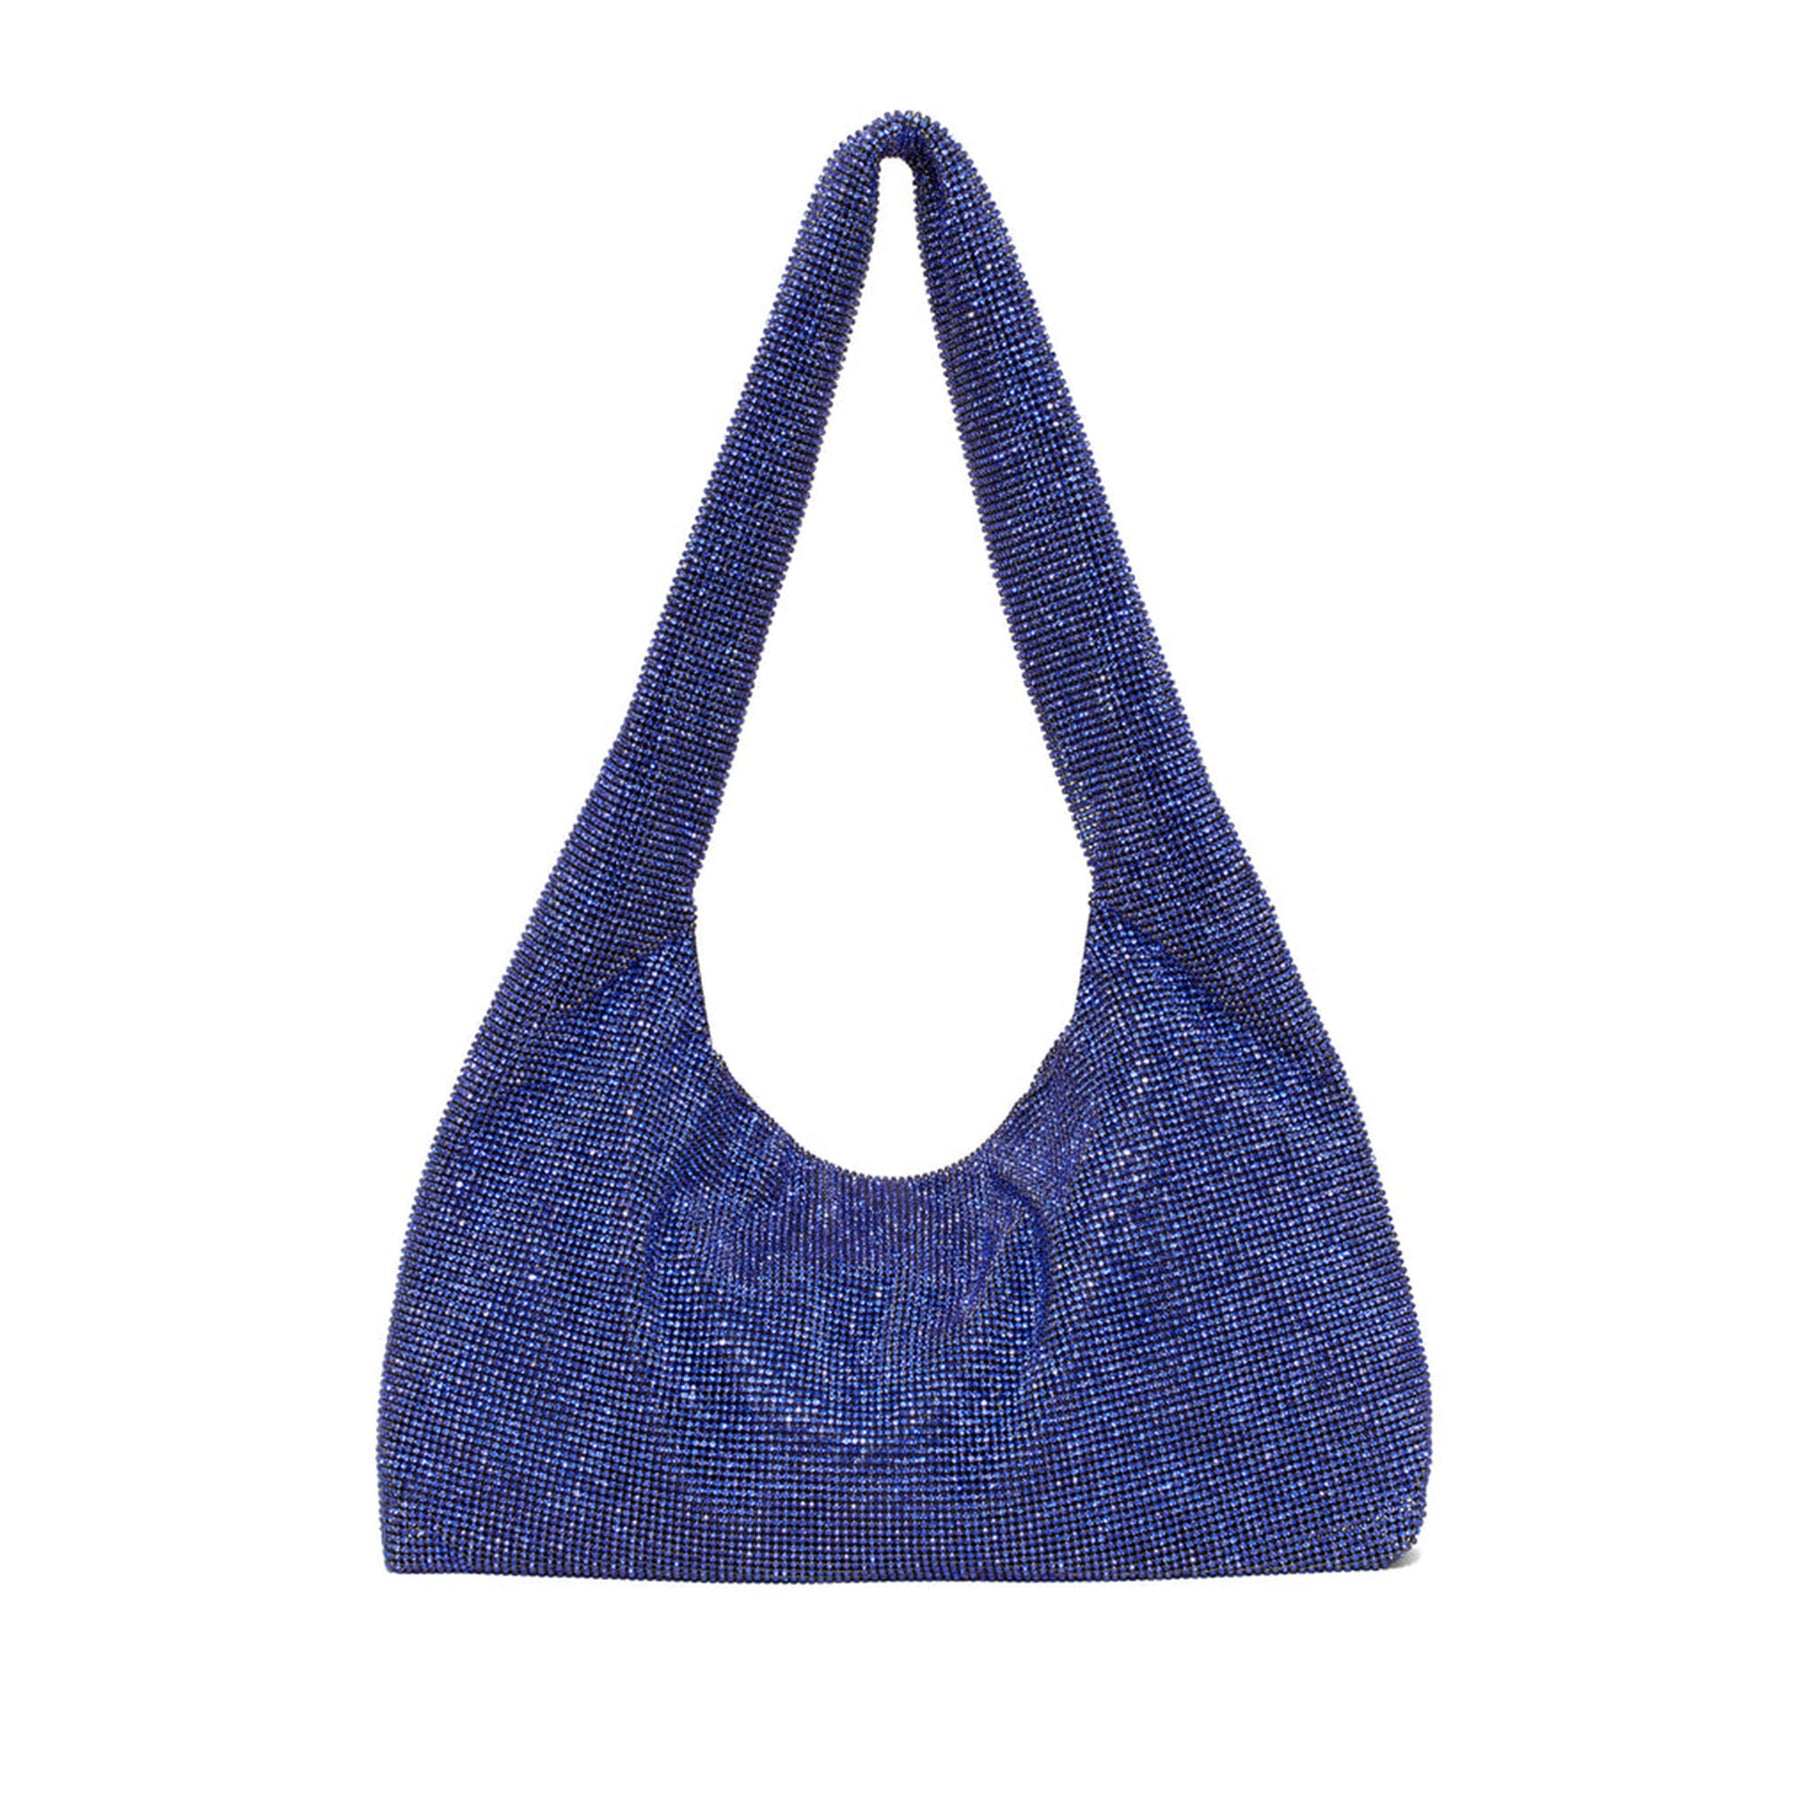 WOMEN PU SHOULDER Bag Fashion Underarm Bag Crossbody Zipper Handbag(Pink)  $21.99 - PicClick AU